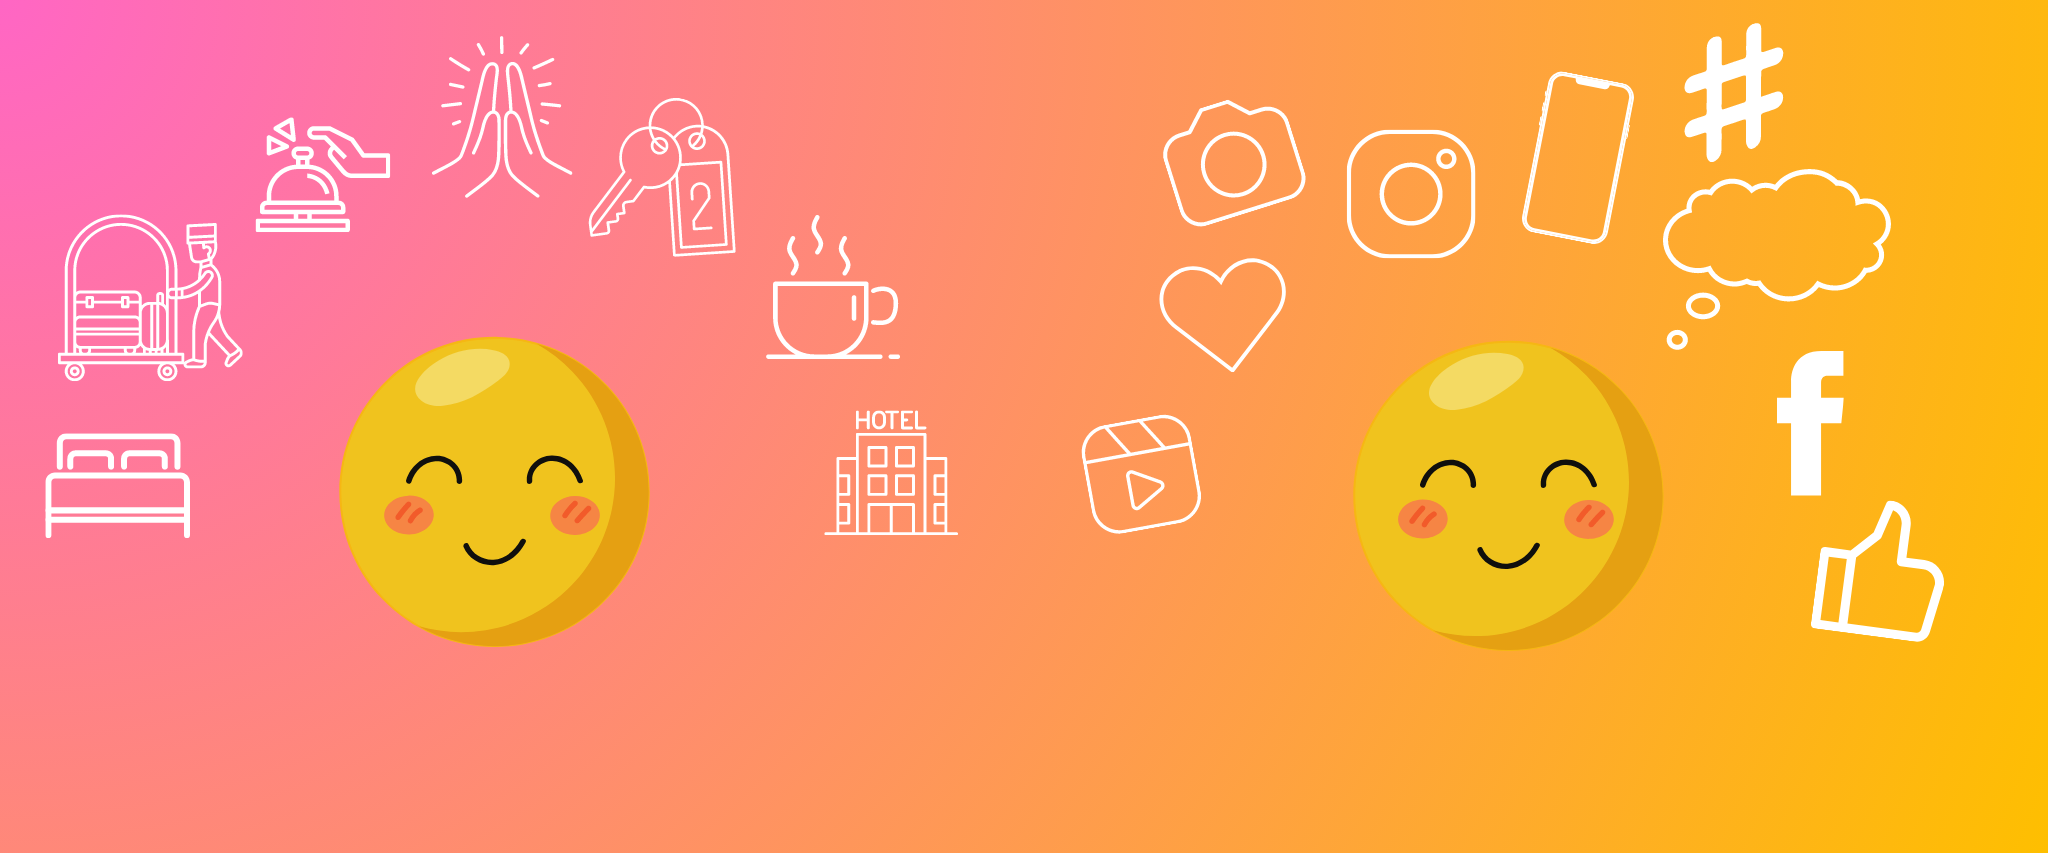 Zwei lächelnde Emojis, um deren Köpfe sich einige Icons befinden